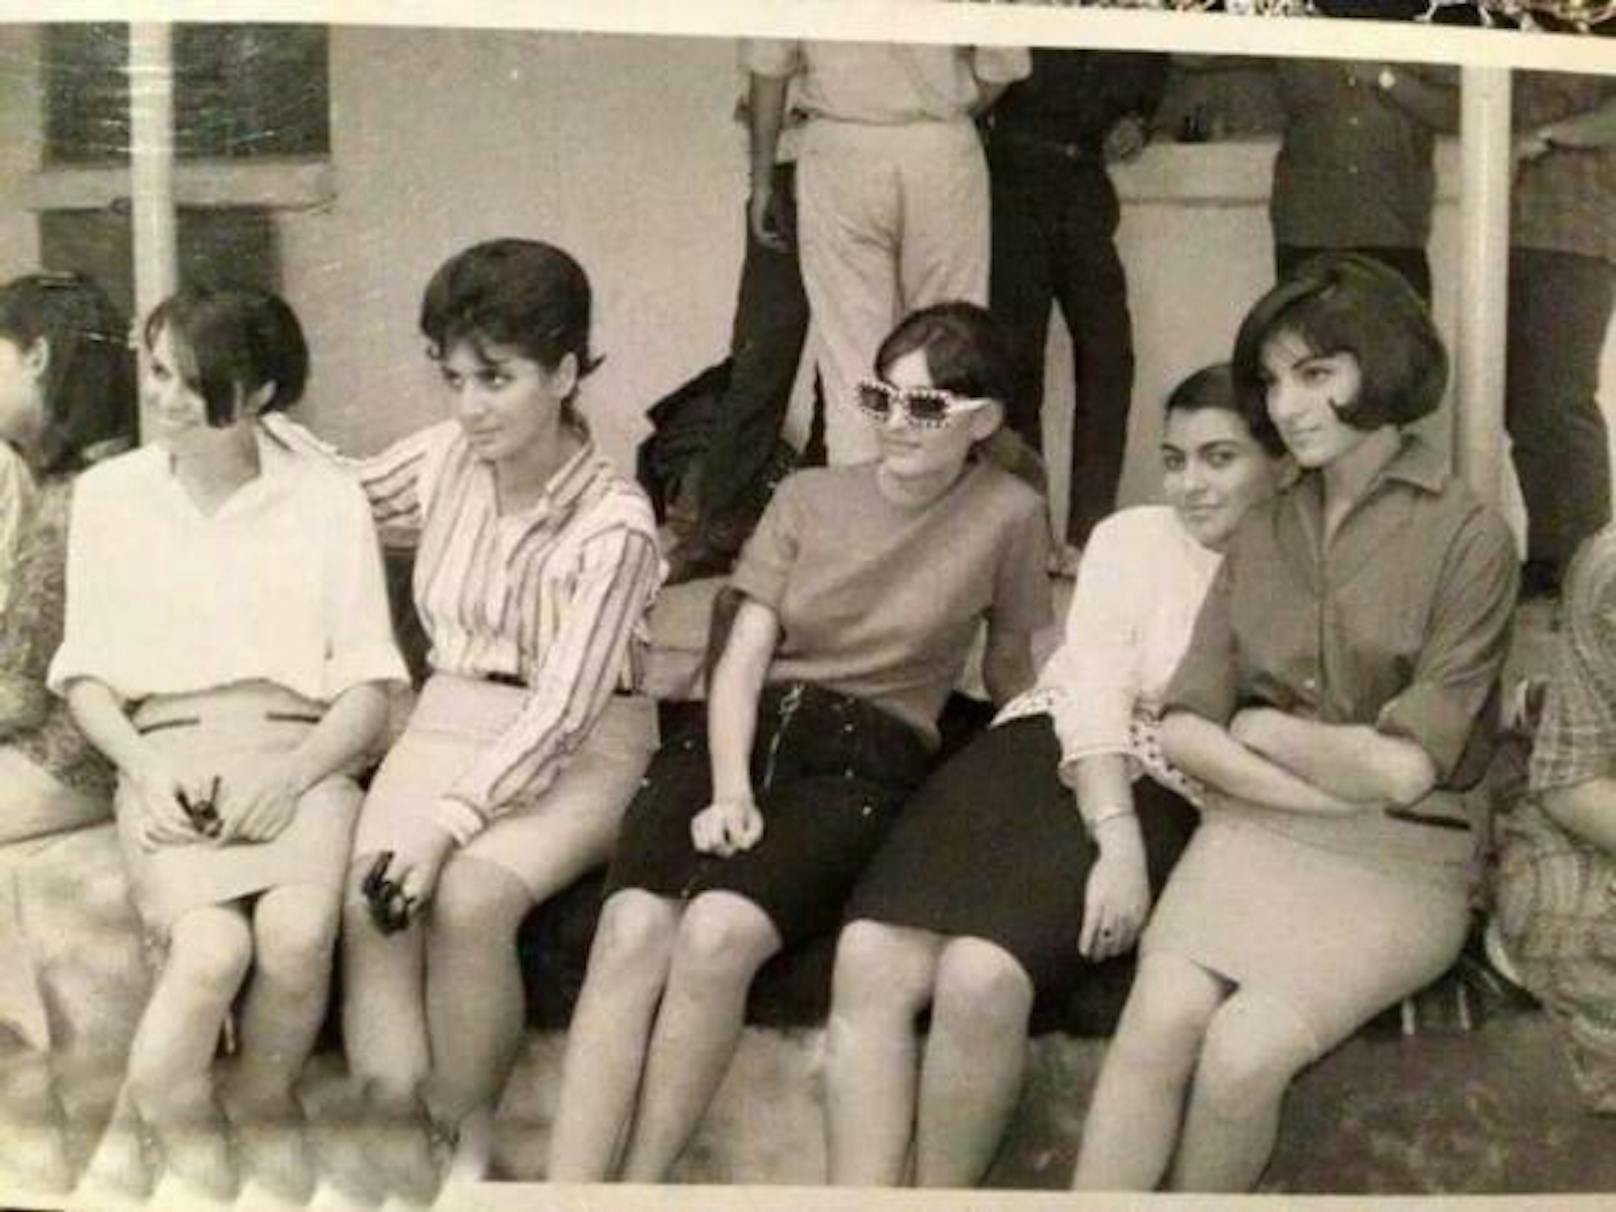 Miniröcke waren in den 1960er-Jahren auch im Irak populär, wie diese Medizinstudentinnen an der Universität in Bagdad (1969) zeigen.